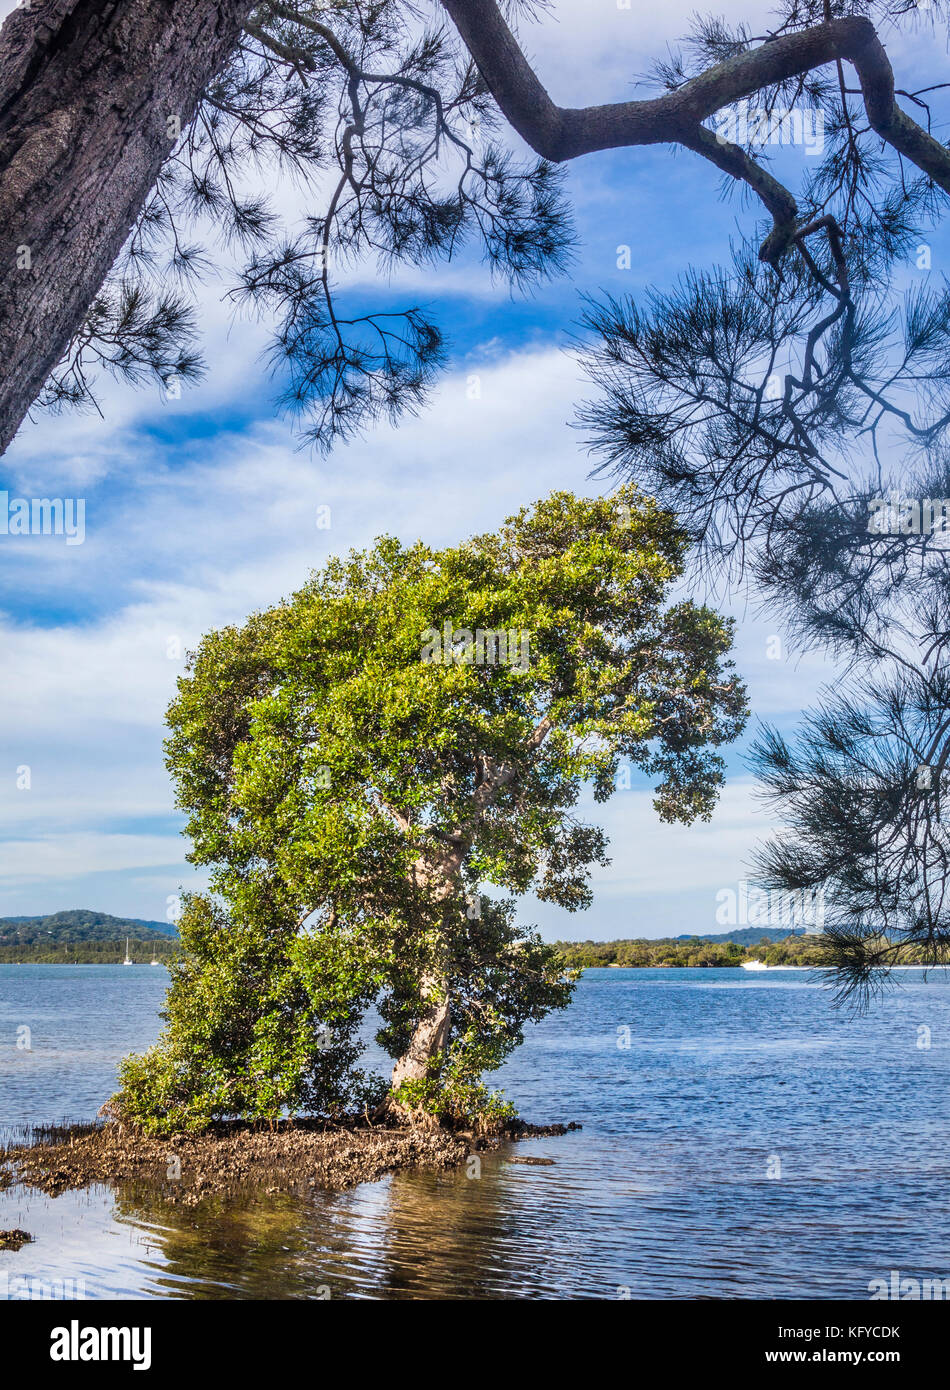 Australien, New South Wales, Central Coast, Woy Woy, riesige Mangrove Tree an den Ufern des Brisbane Wasser Stockfoto